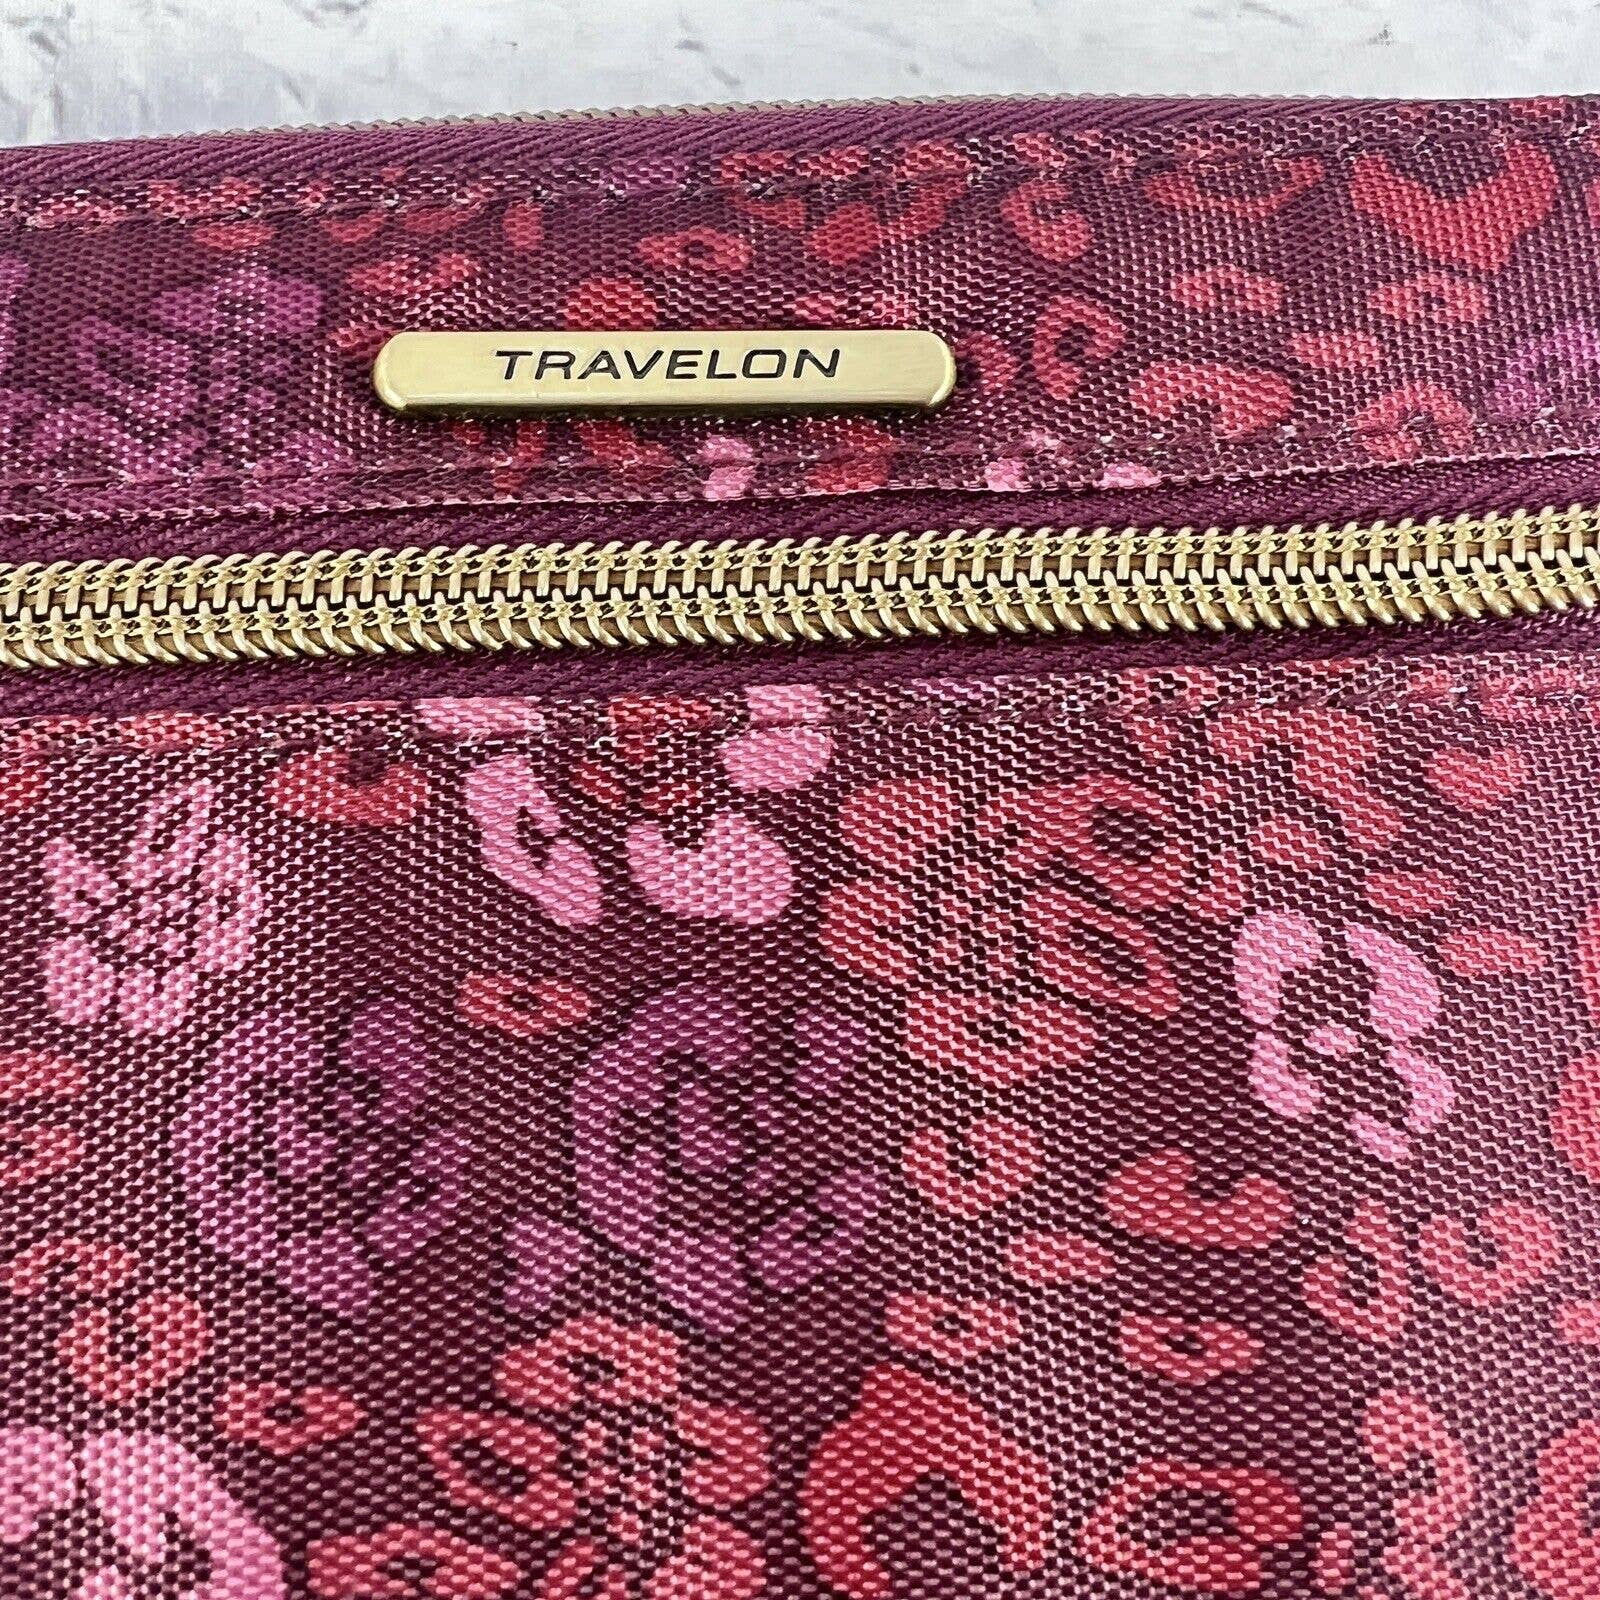 Travelon Wristlet Zip Around Maroon Floral Safe ID RFID Blocking Wallet Clutch